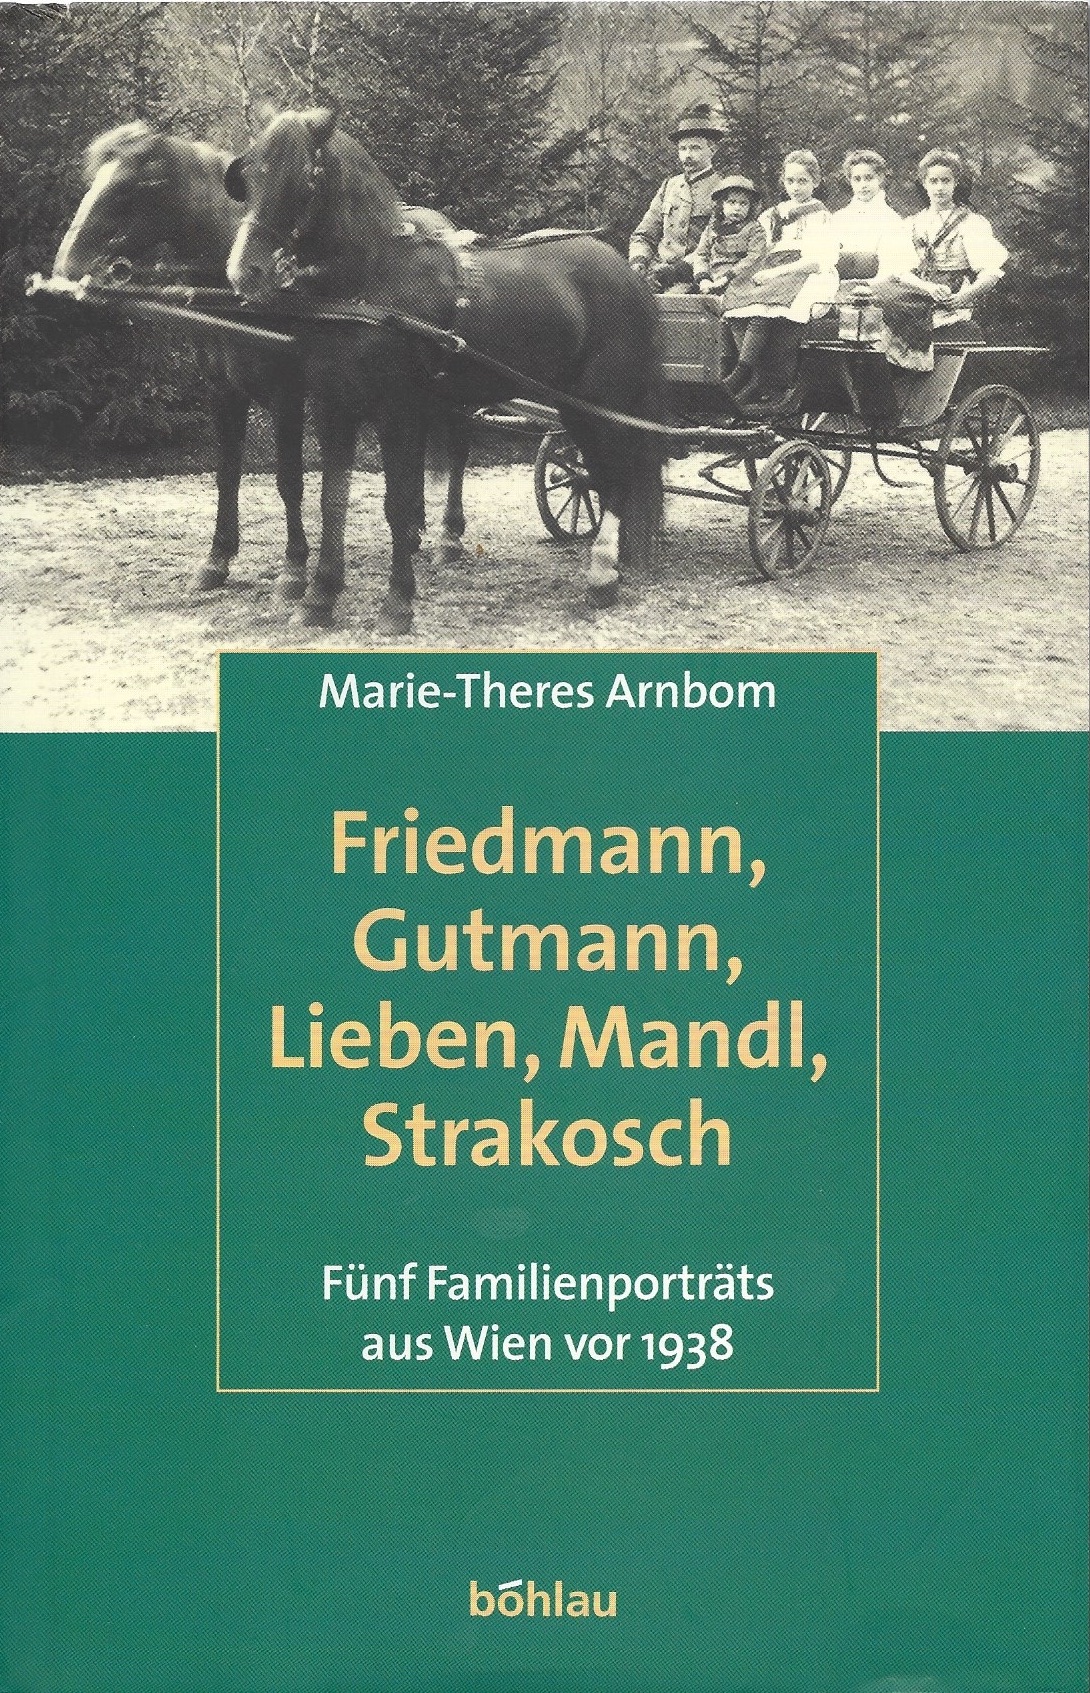 Buchcover Fünf Familienporträts aus Wien vor 1938